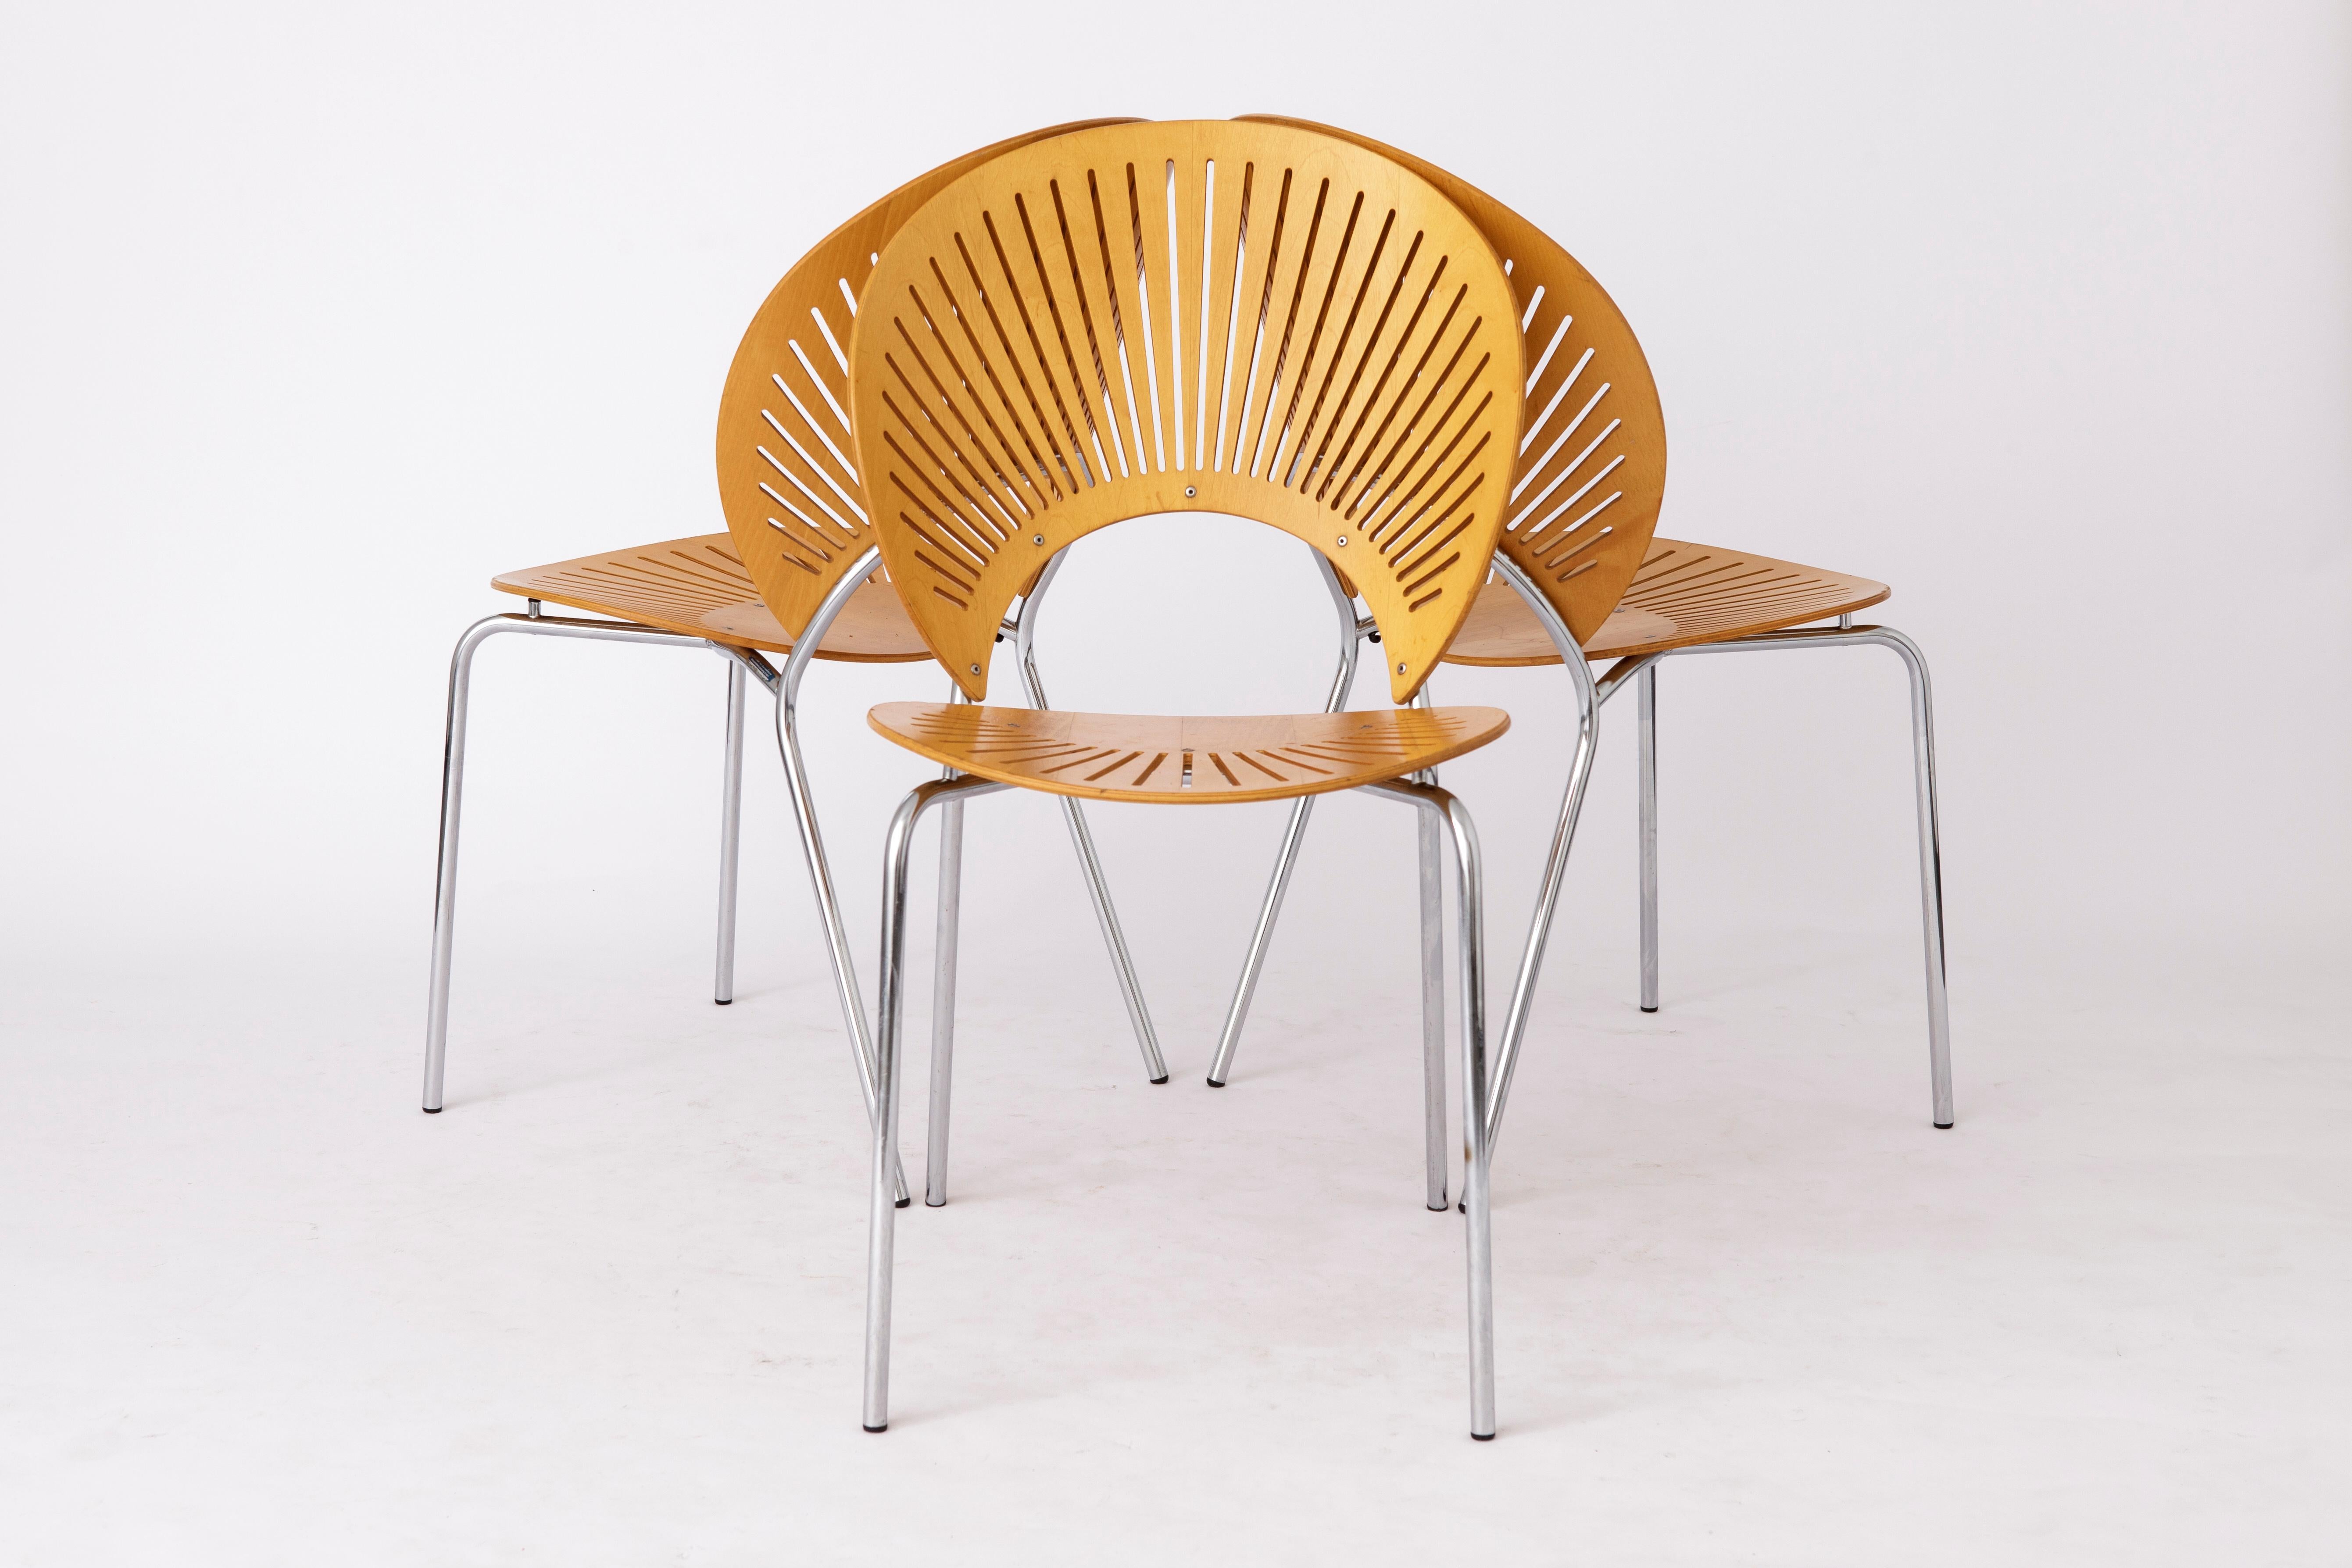 3 élégantes chaises de salle à manger du designer danois Nanna Beeche en version bois de hêtre. 
Modèle : Trinidad à partir de 1993. 
Fabricant : Fredericia, Danemark. 
Le prix affiché est pour 3 chaises. 

Les chaises sont en très bon état.